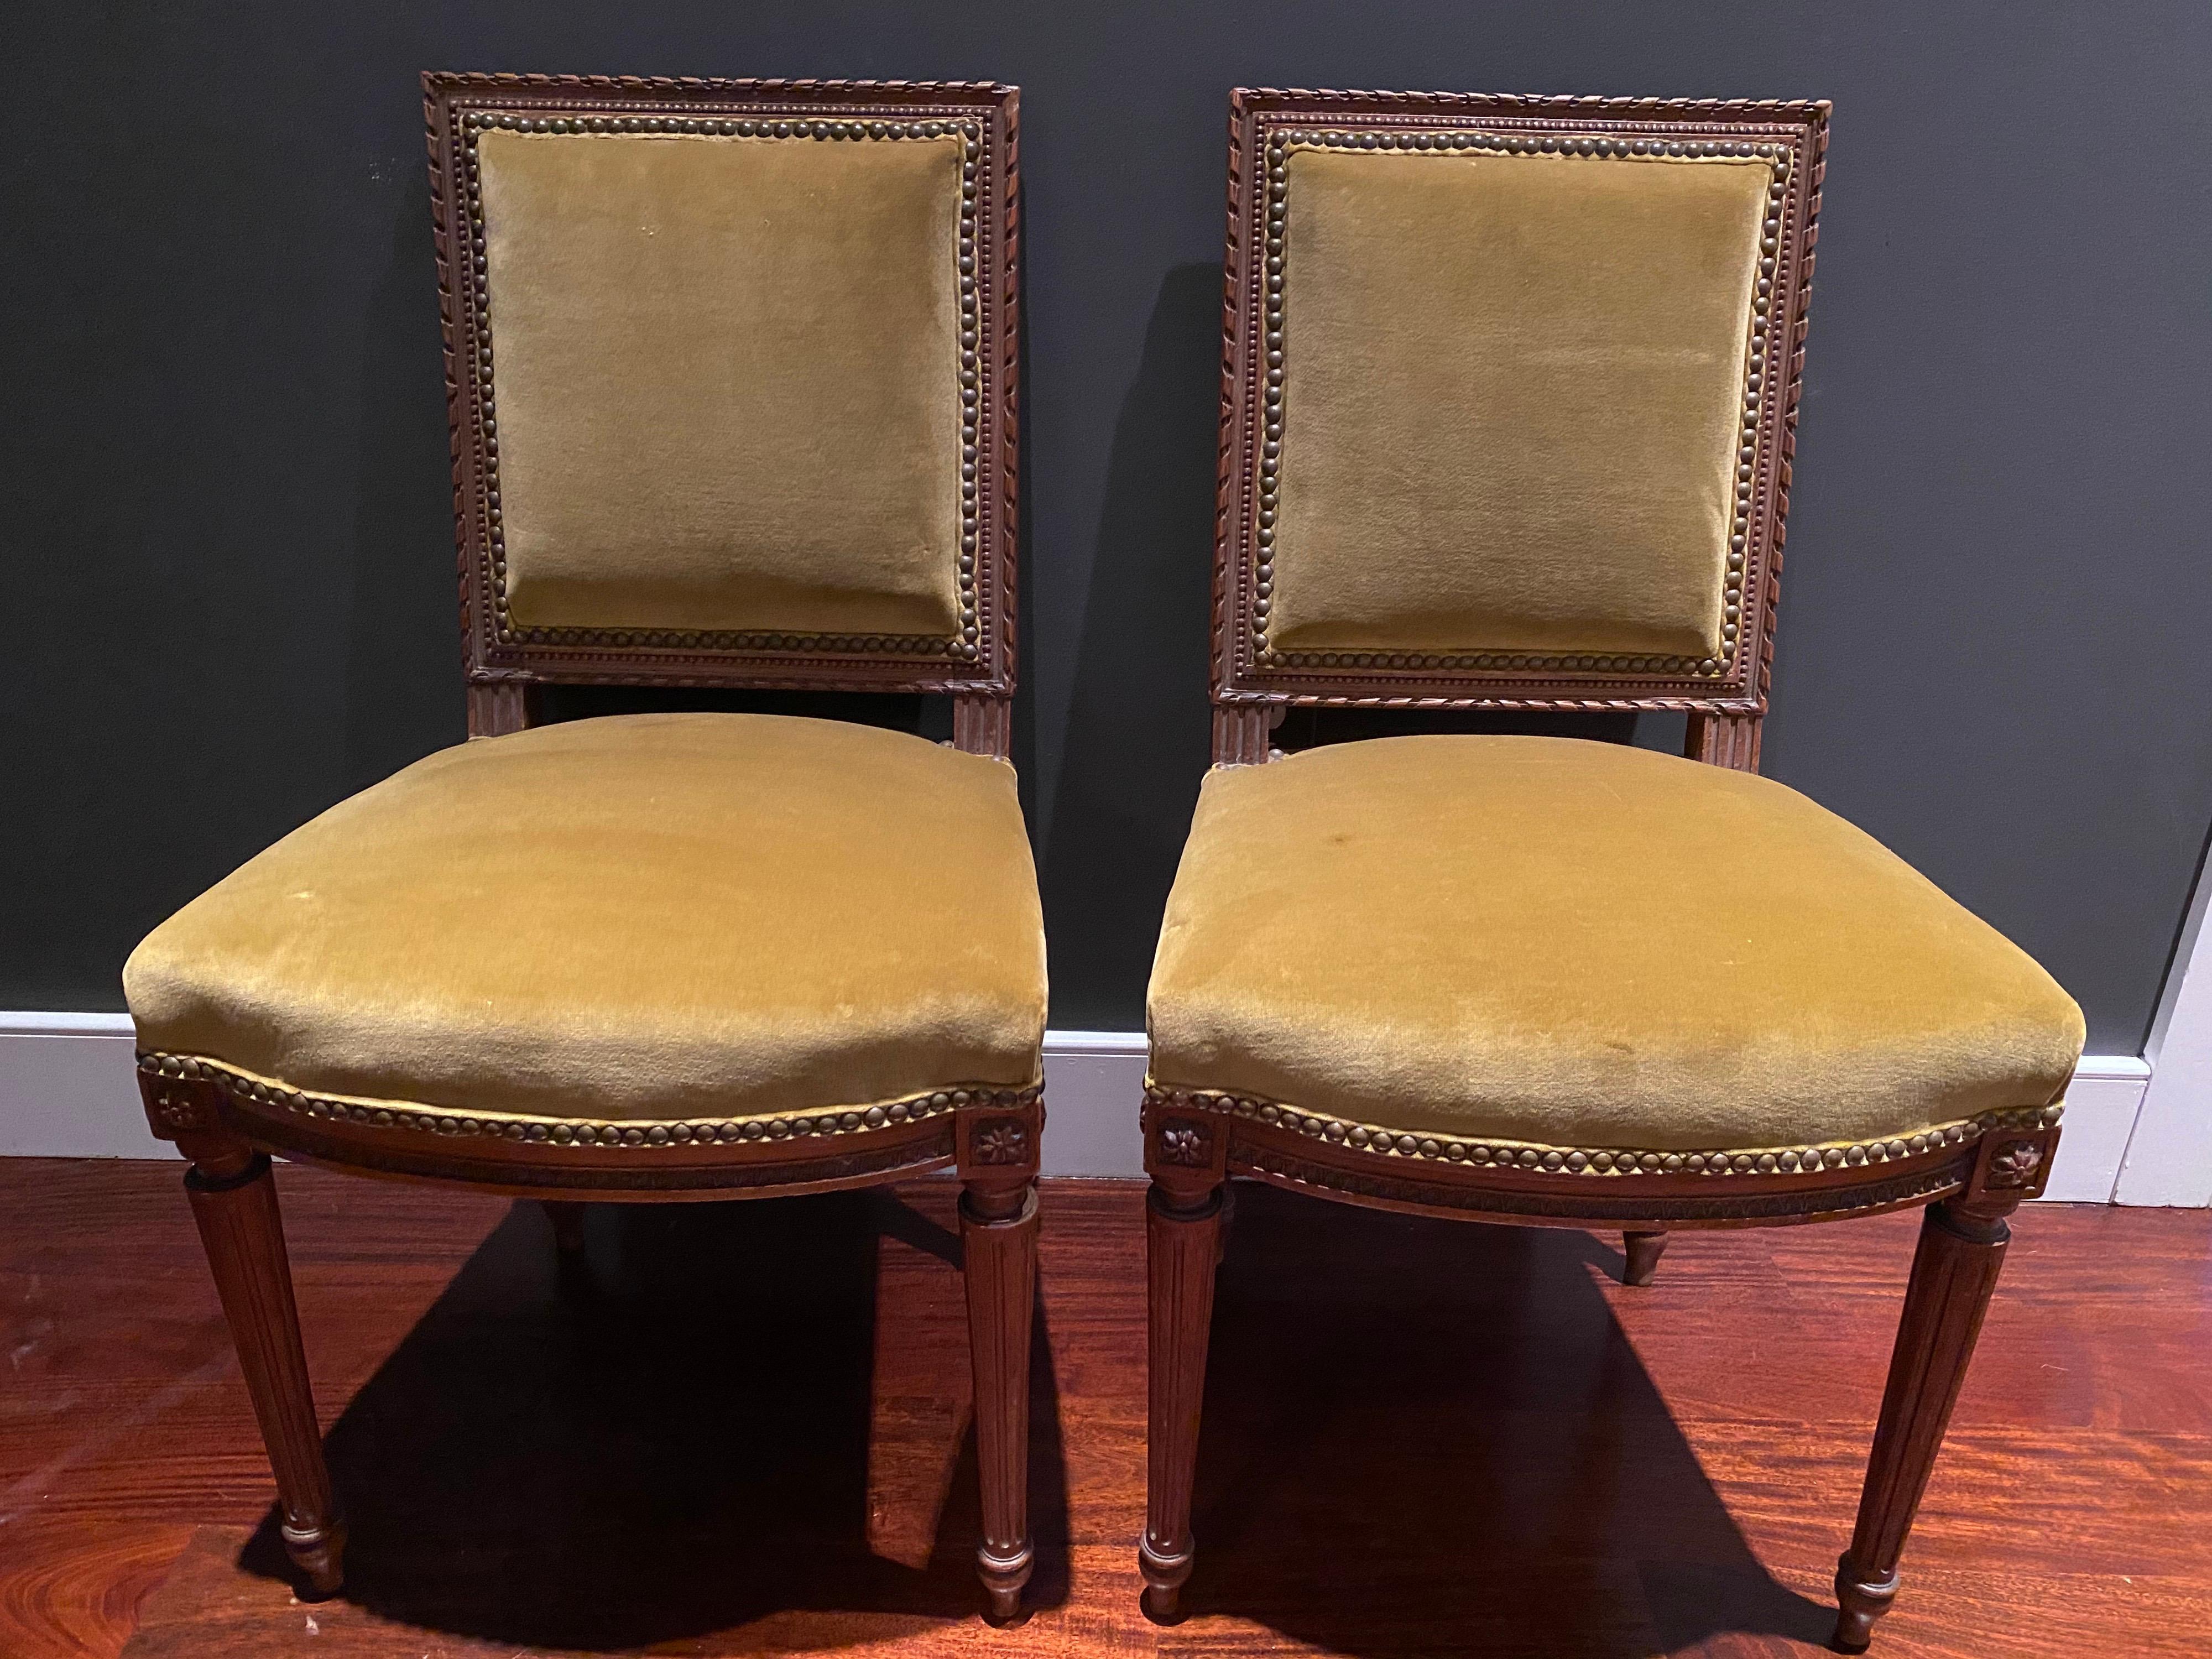 Ein Paar Beistellstühle im Louis XVI-Stil, gepolstert mit senfgelbem Samt und kontrastierenden weißen Baumwolllehnen.